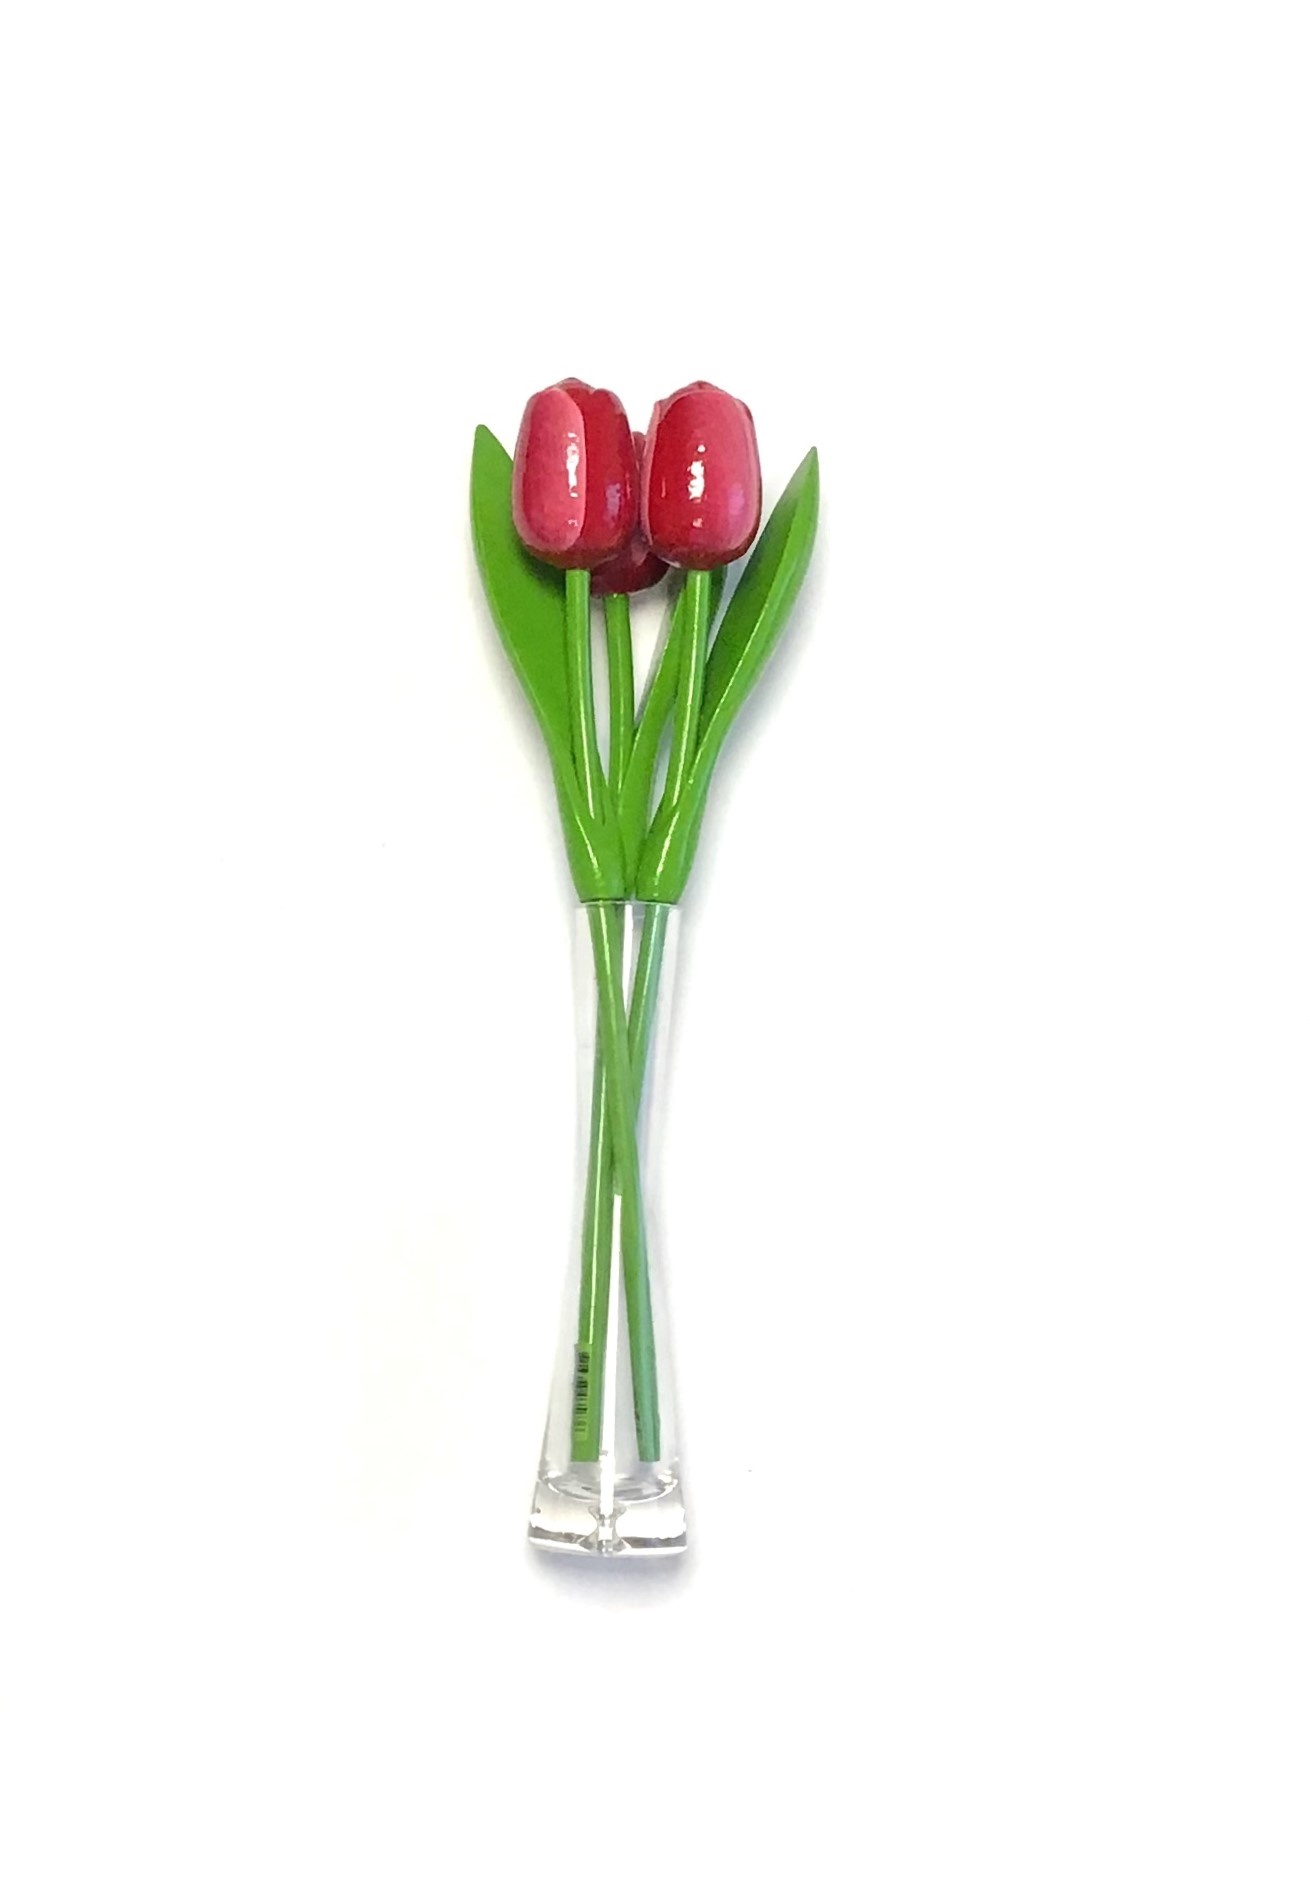 Autonomie melk wit lawaai ✓ Rood - witte houten tulpen in een glazen vaas